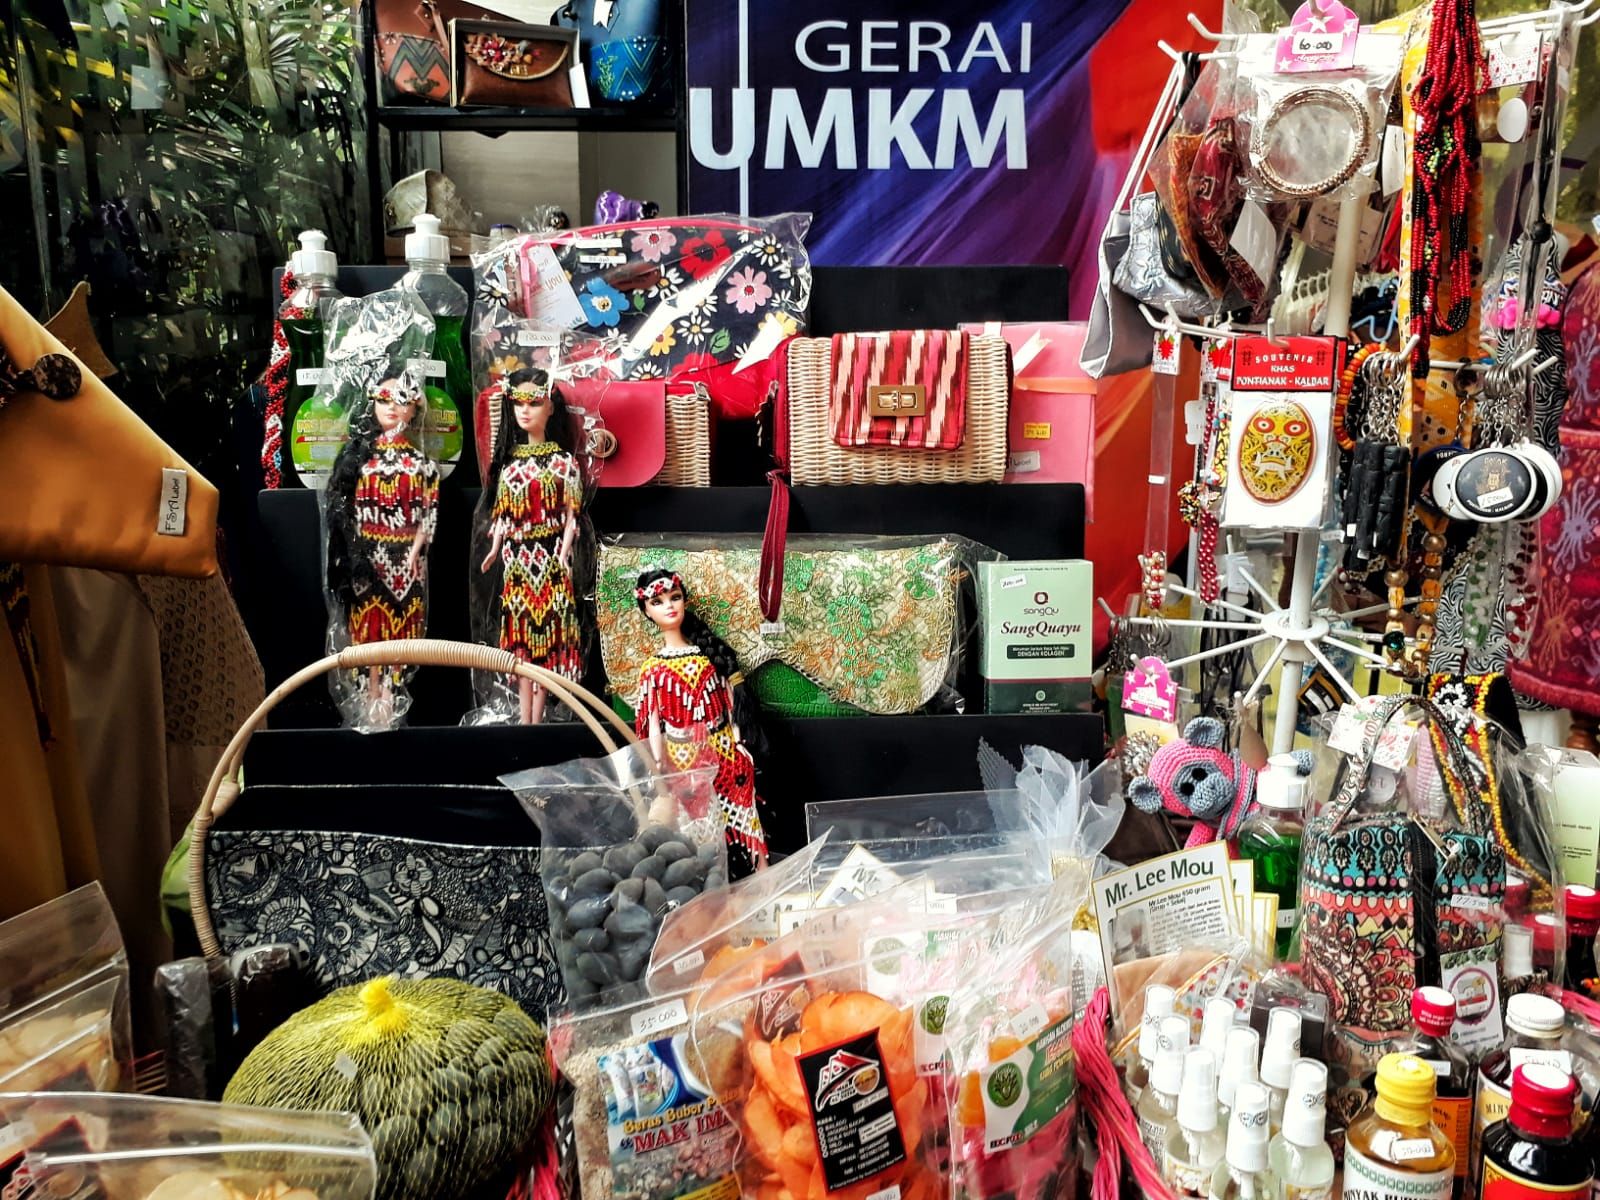 Gerai UMKM Keluarga Khatulistiwa menampilkan berbagai produk khas lokal Kalimantan Barat pada acara Batik Nusantara Celebration di Hotel Mercure Pontianak, 19 - 23 Oktober 2021